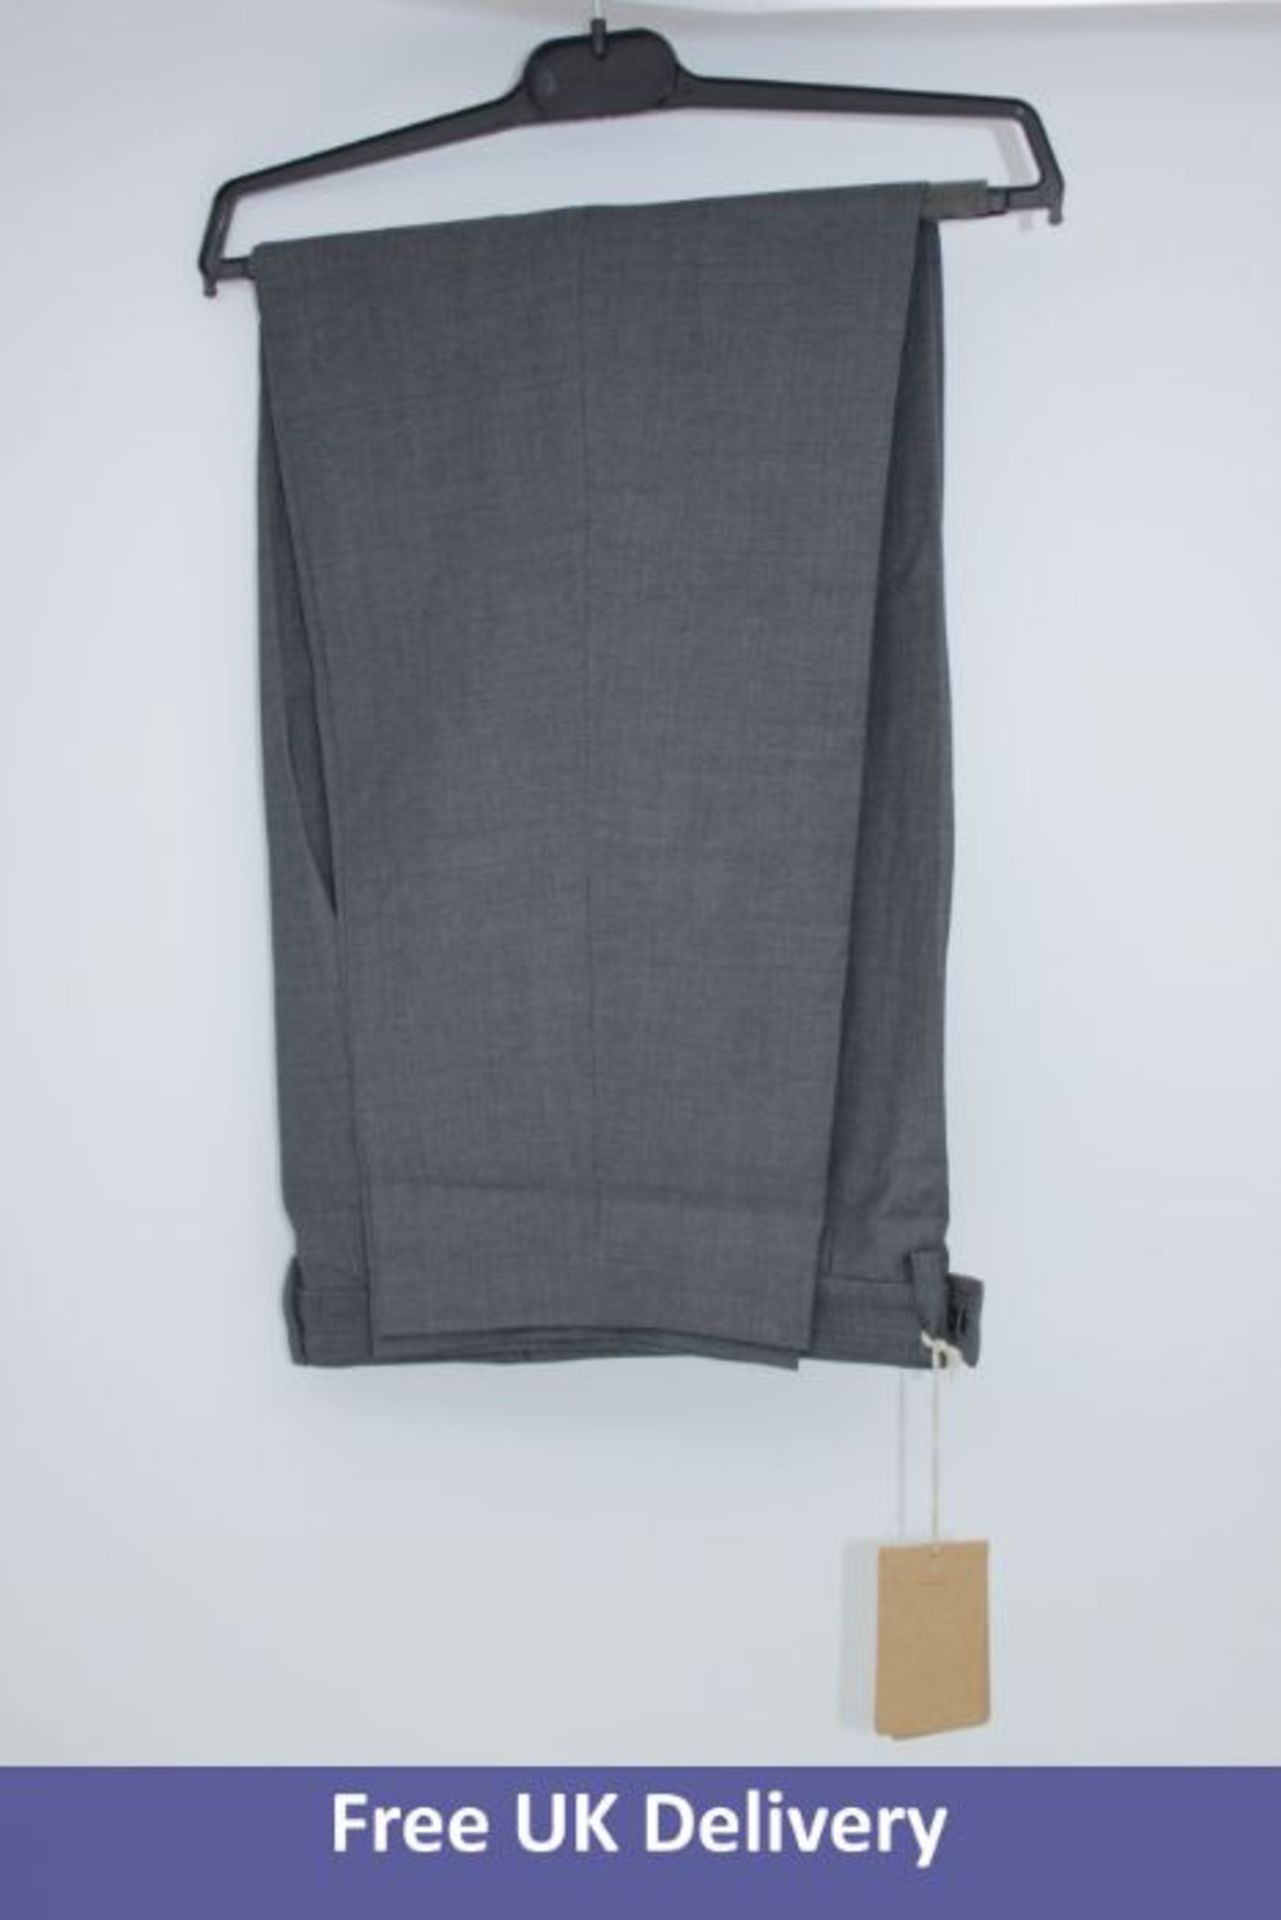 Two A.P.C Pantalon Men's Trousers, Dark Grey, EU 36